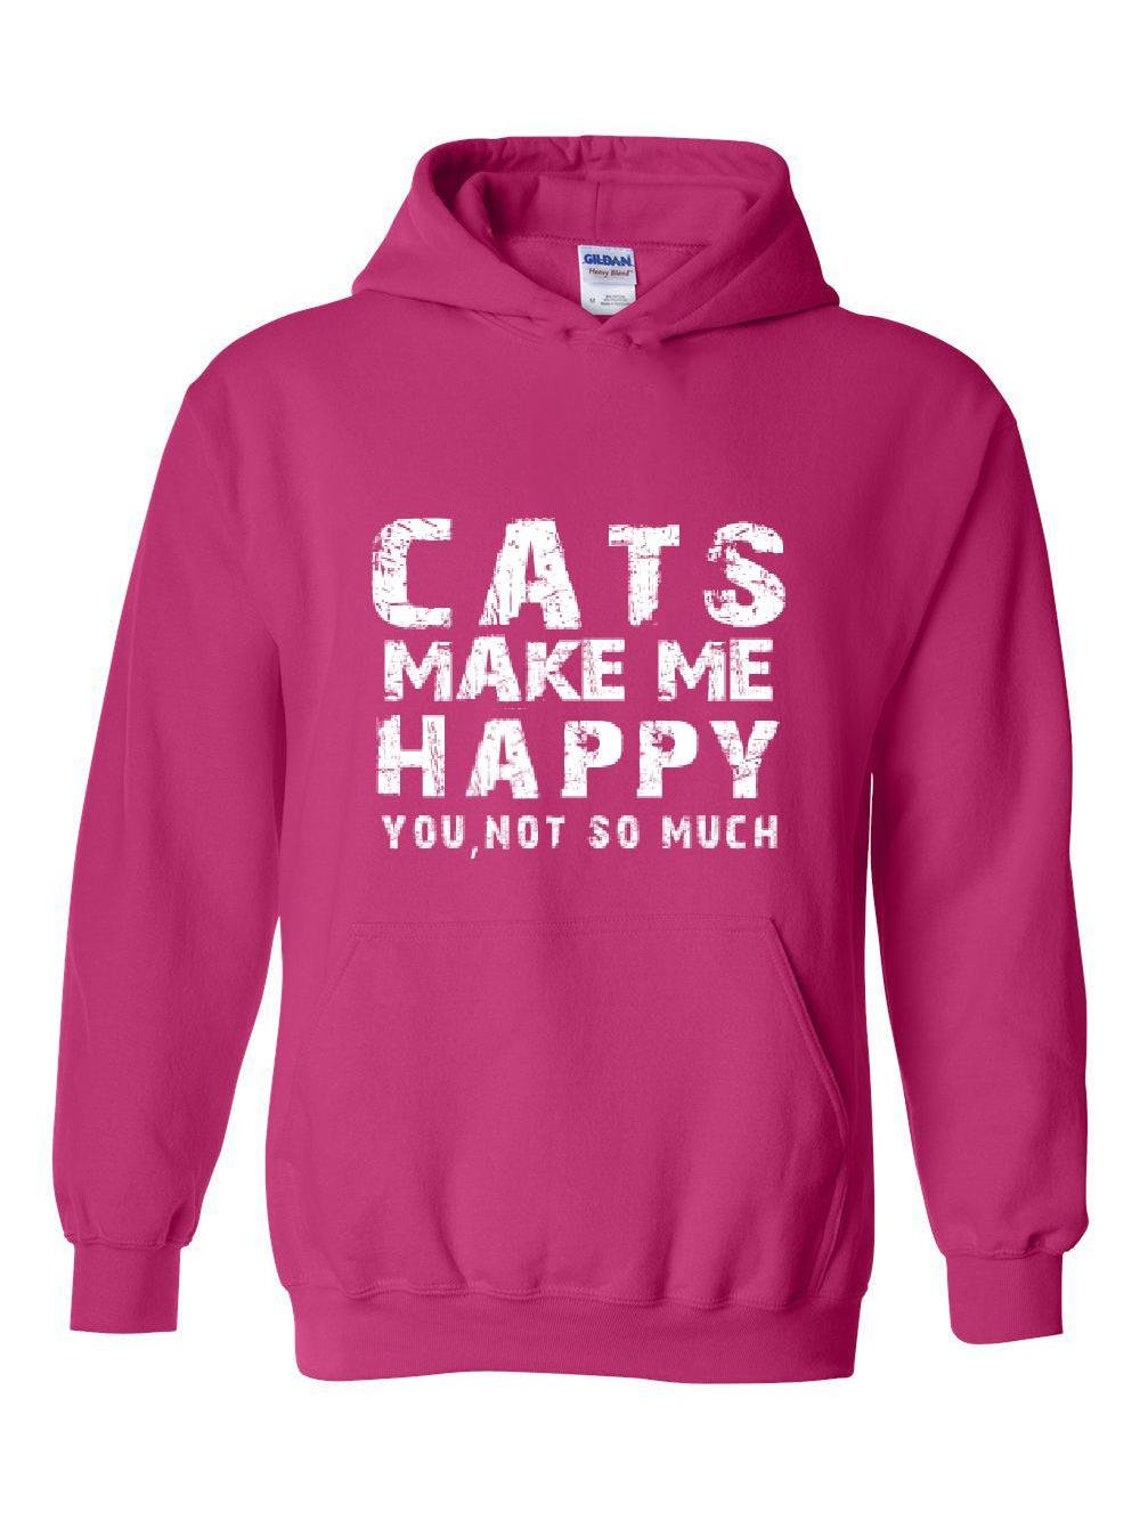 Cats Make Me Happy Unisex Hoodie Hooded Sweatshirt - Etsy